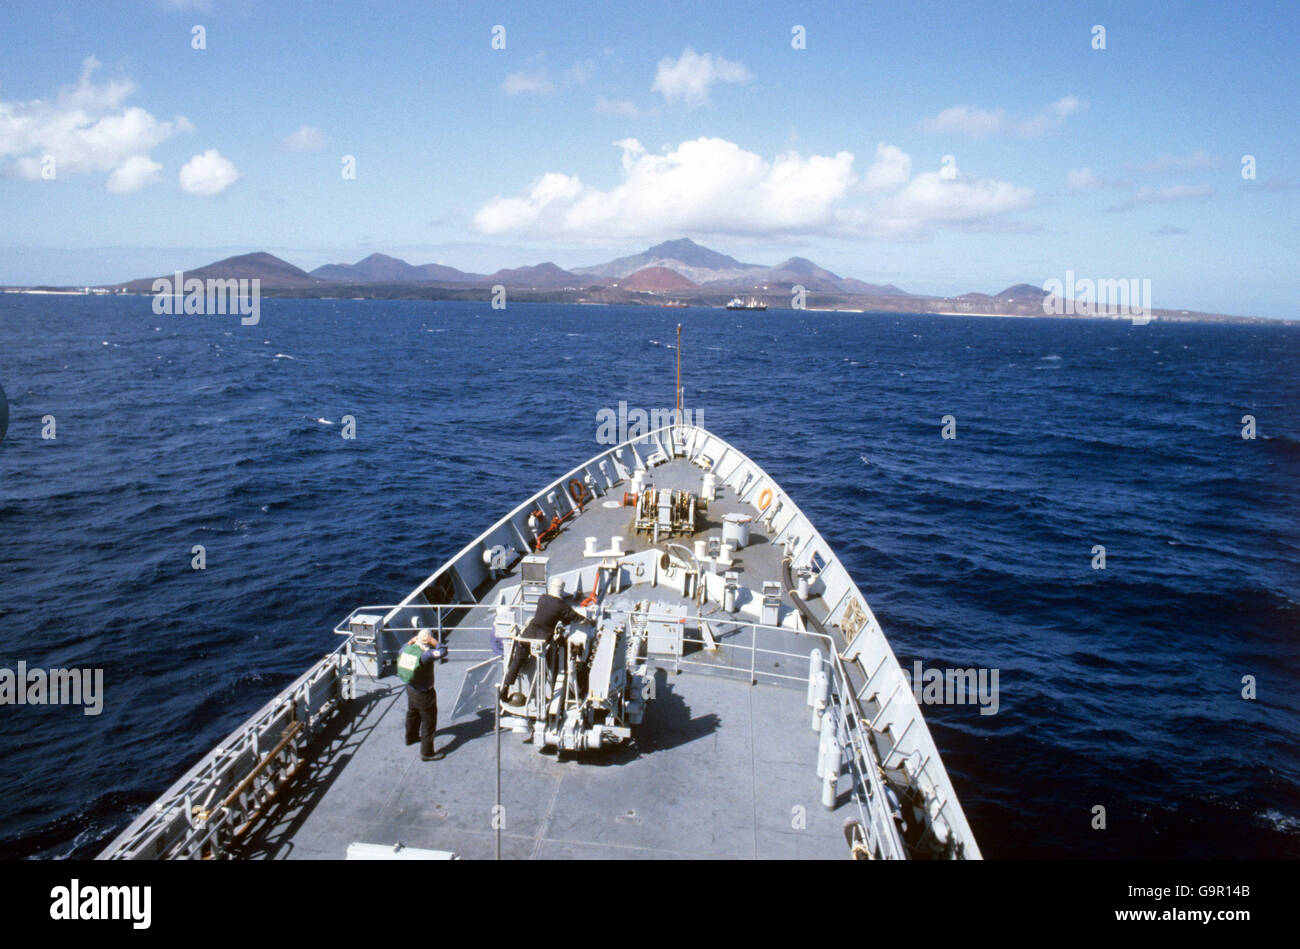 Ascension Island aus dem Meer. Das vulkanische Wahrzeichen mitten im Atlantik, das sich als wichtiger Stützpunkt für die britische Task Force in den Falklands erwiesen hat. Stockfoto